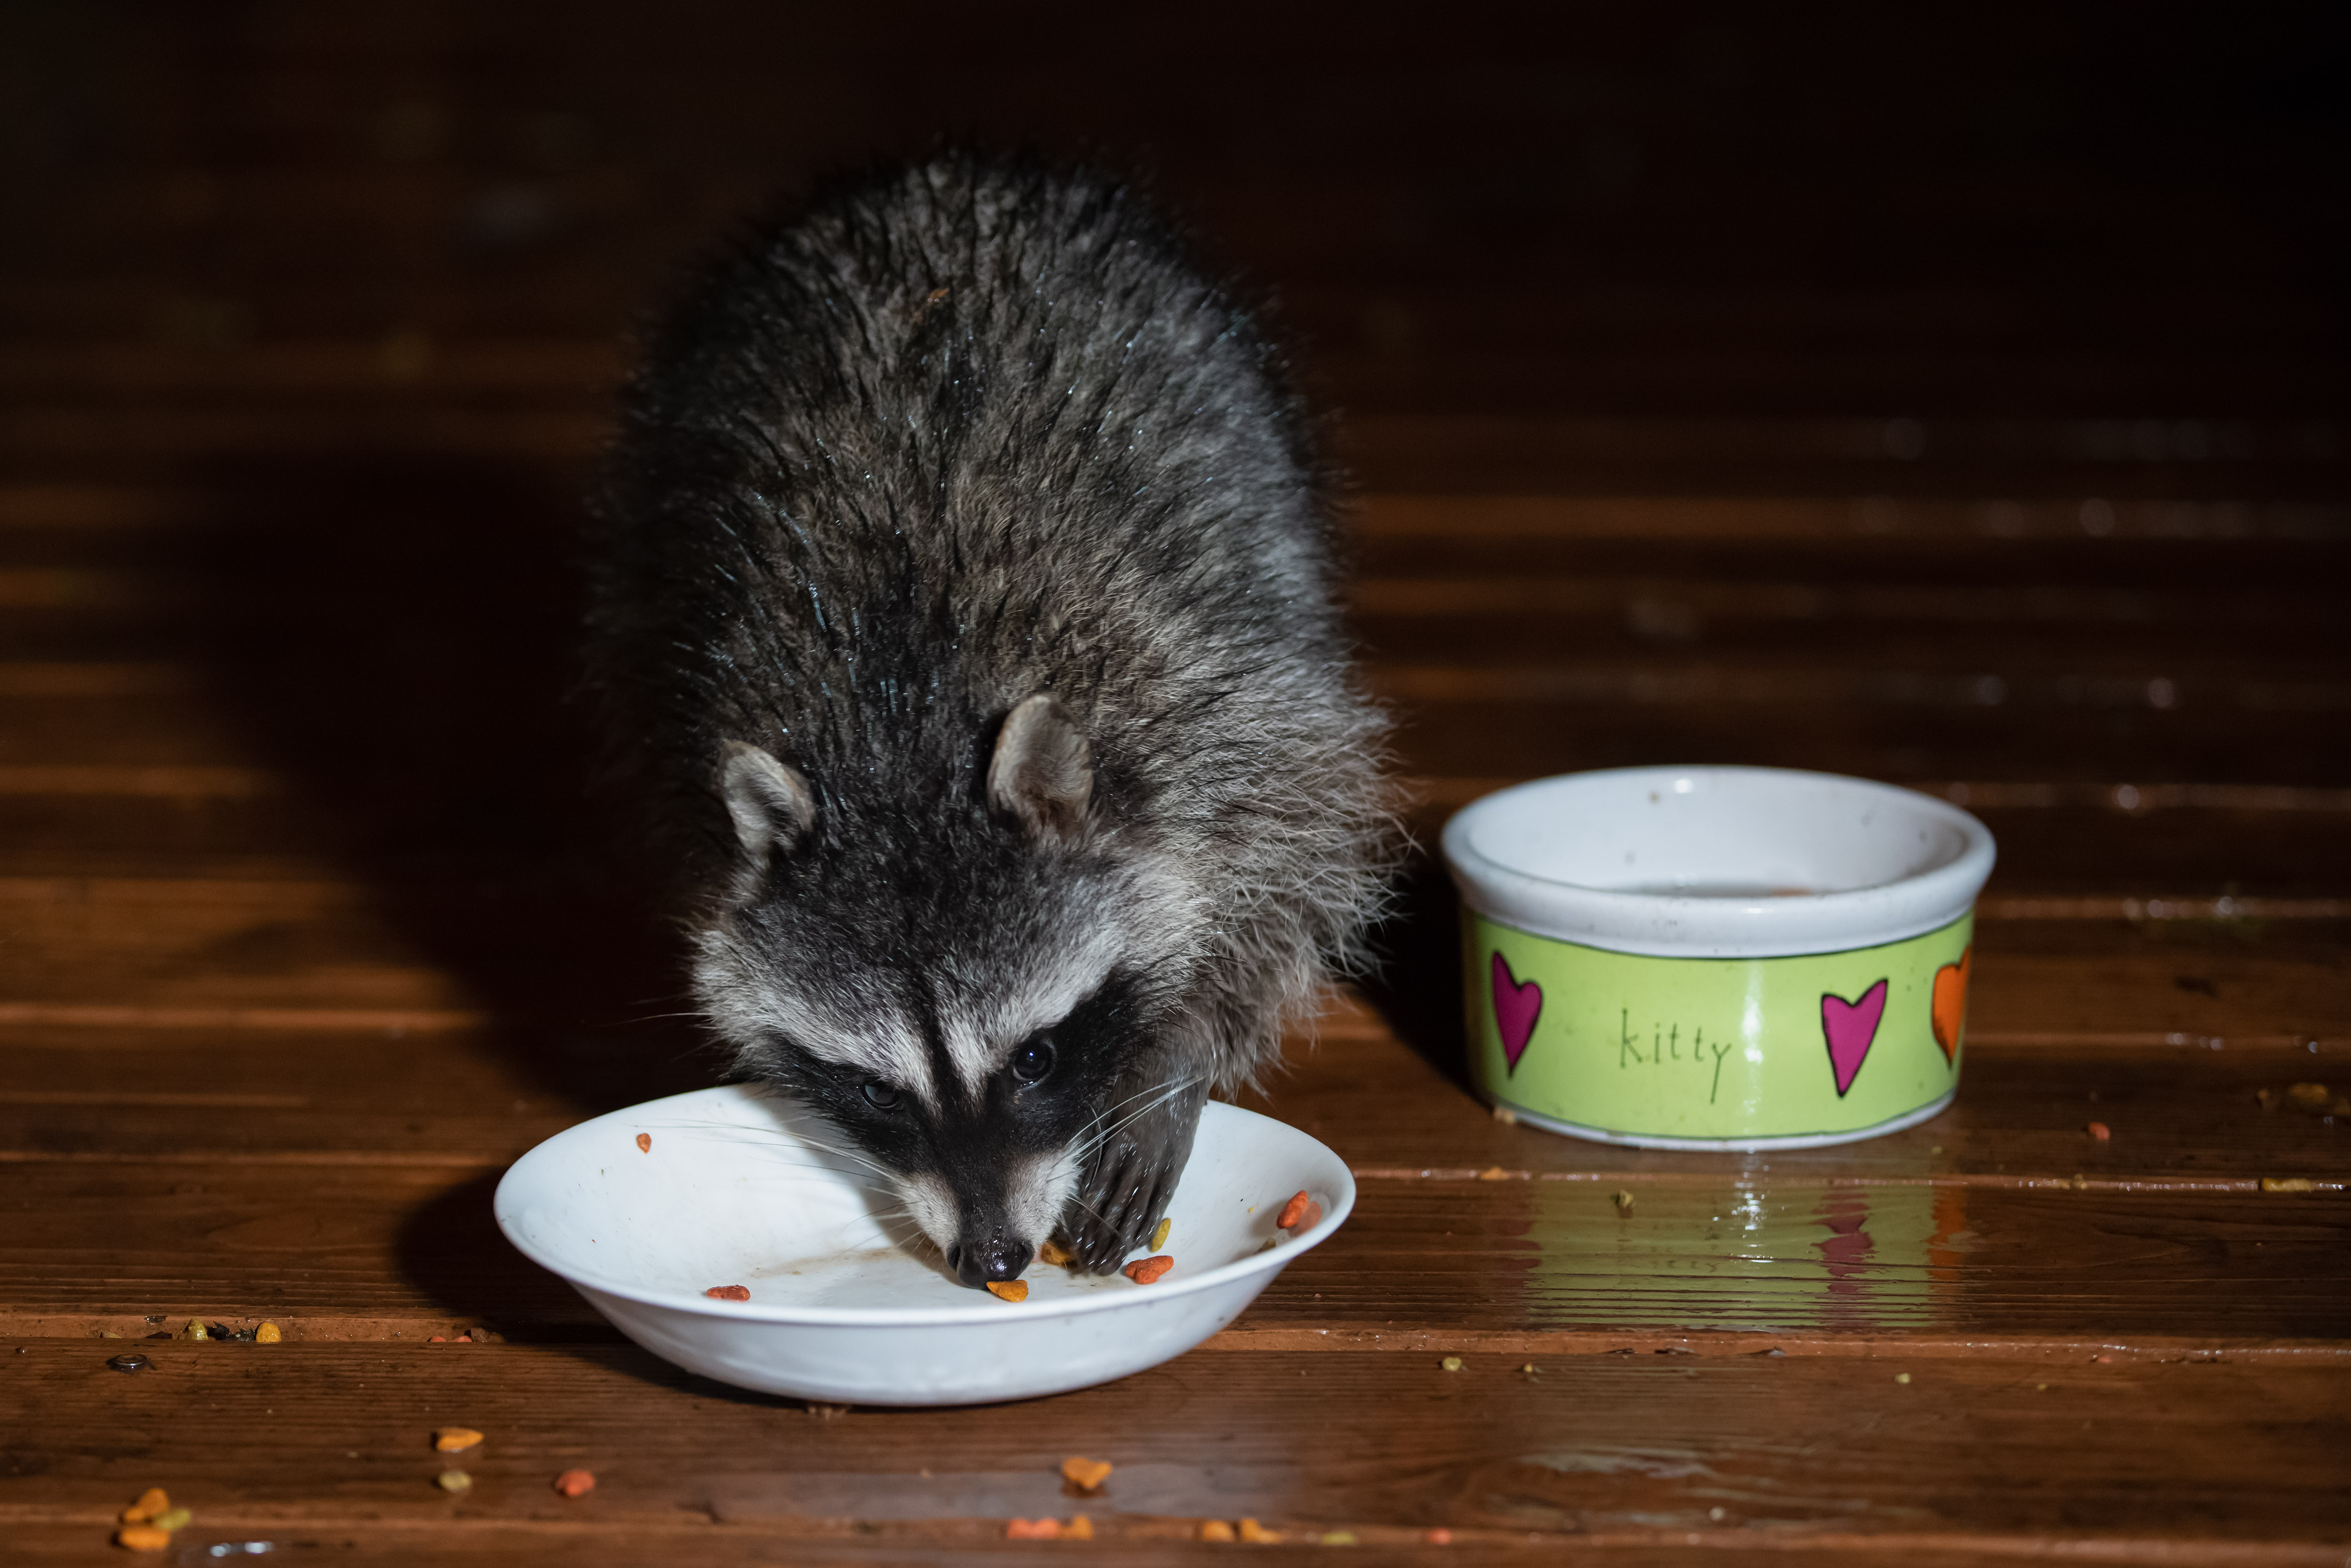 Feral cat feeding results in raccoon feeding